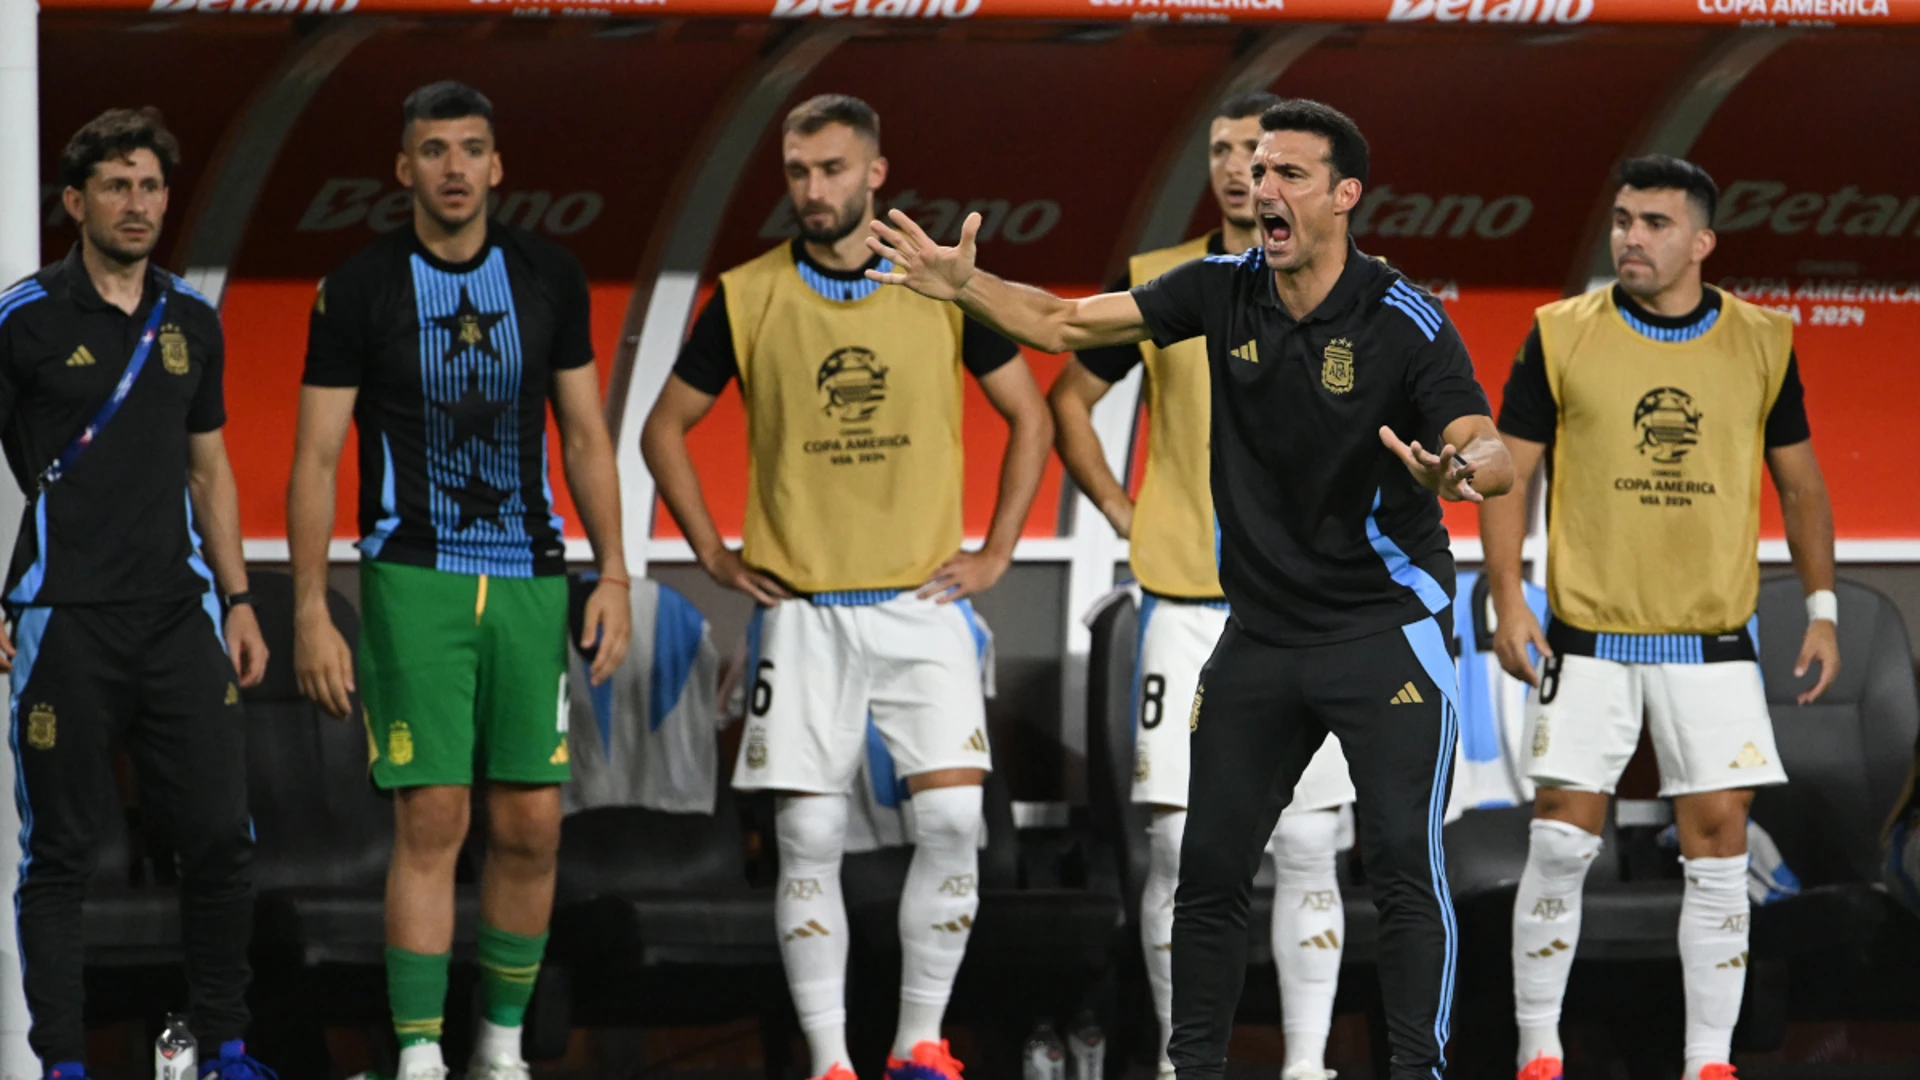 Scaloni hails Argentina for 'Triple Crown' triumph